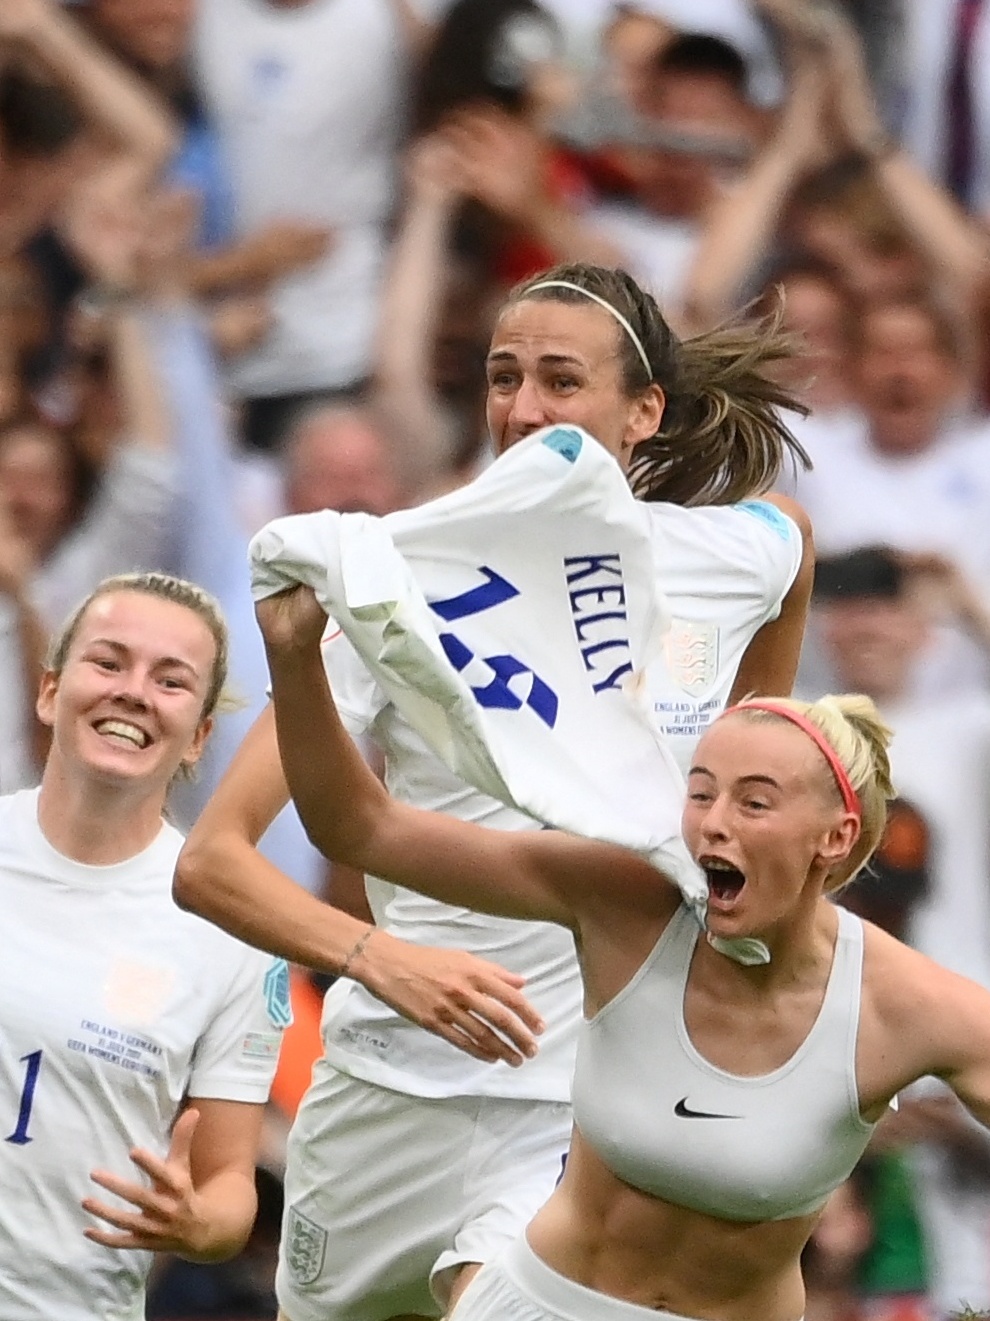 Euro'2022: Inglaterra consegue reviravolta diante da Espanha e garante vaga  nas 'meias' - Futebol Feminino - Jornal Record